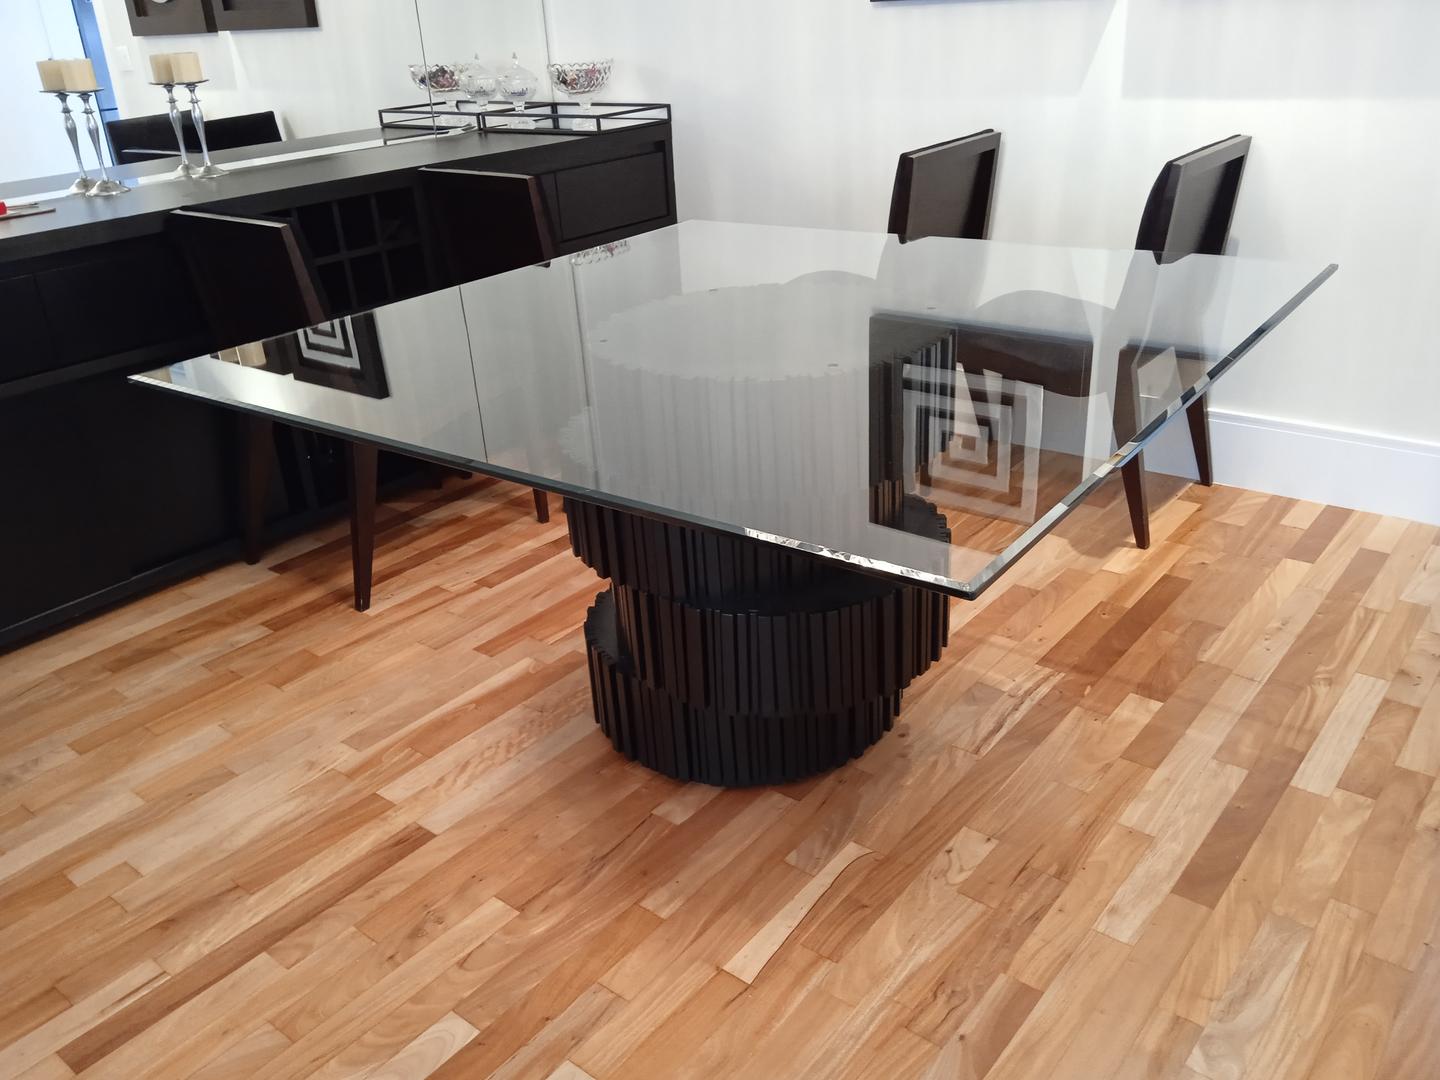 Mesa de jantar em Madeira Marrom 79 cm x 145 cm x 145 cm